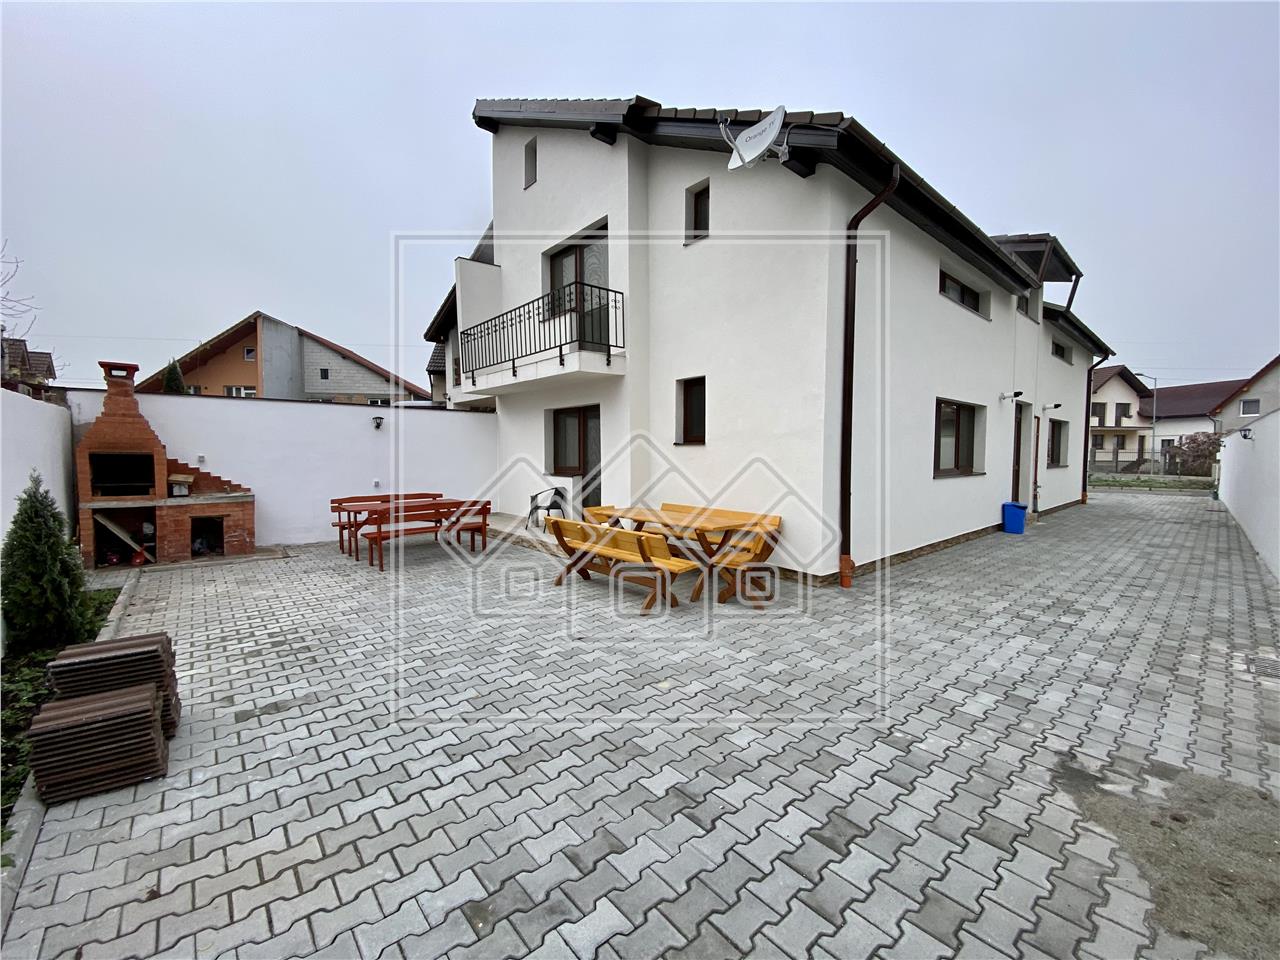 Pension zum Verkauf in Sibiu - 4 Wohnungen - Theresienstadt